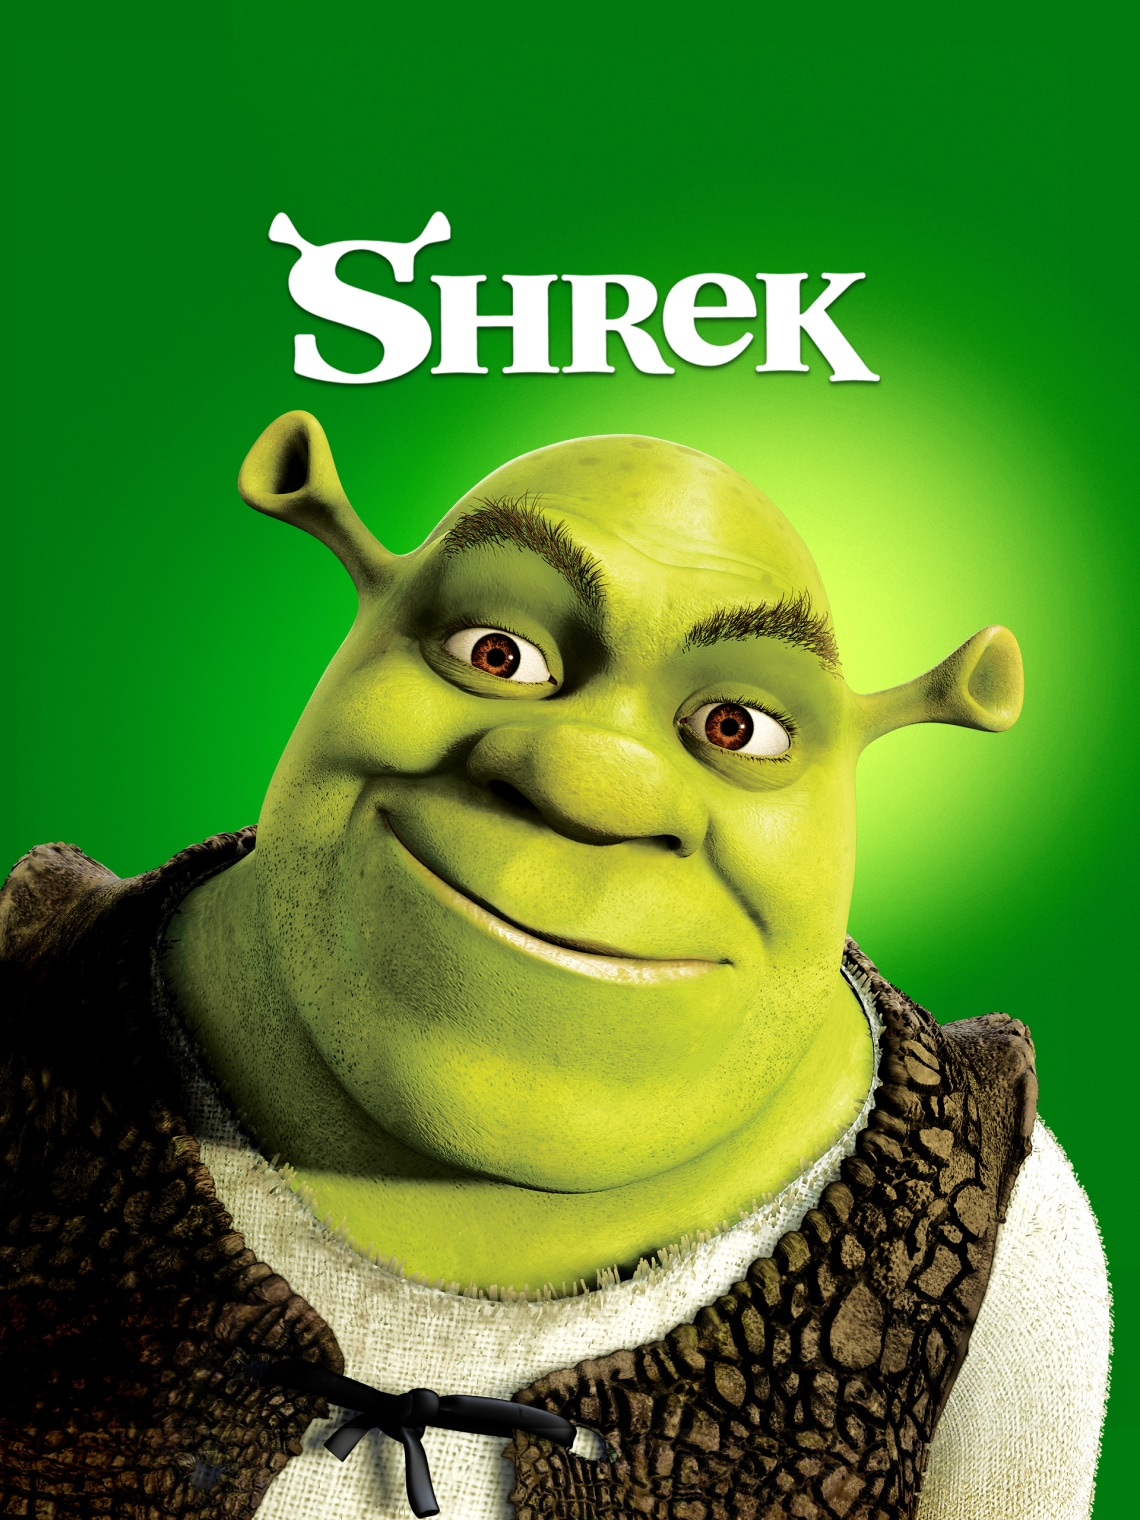 Shrek (2001):